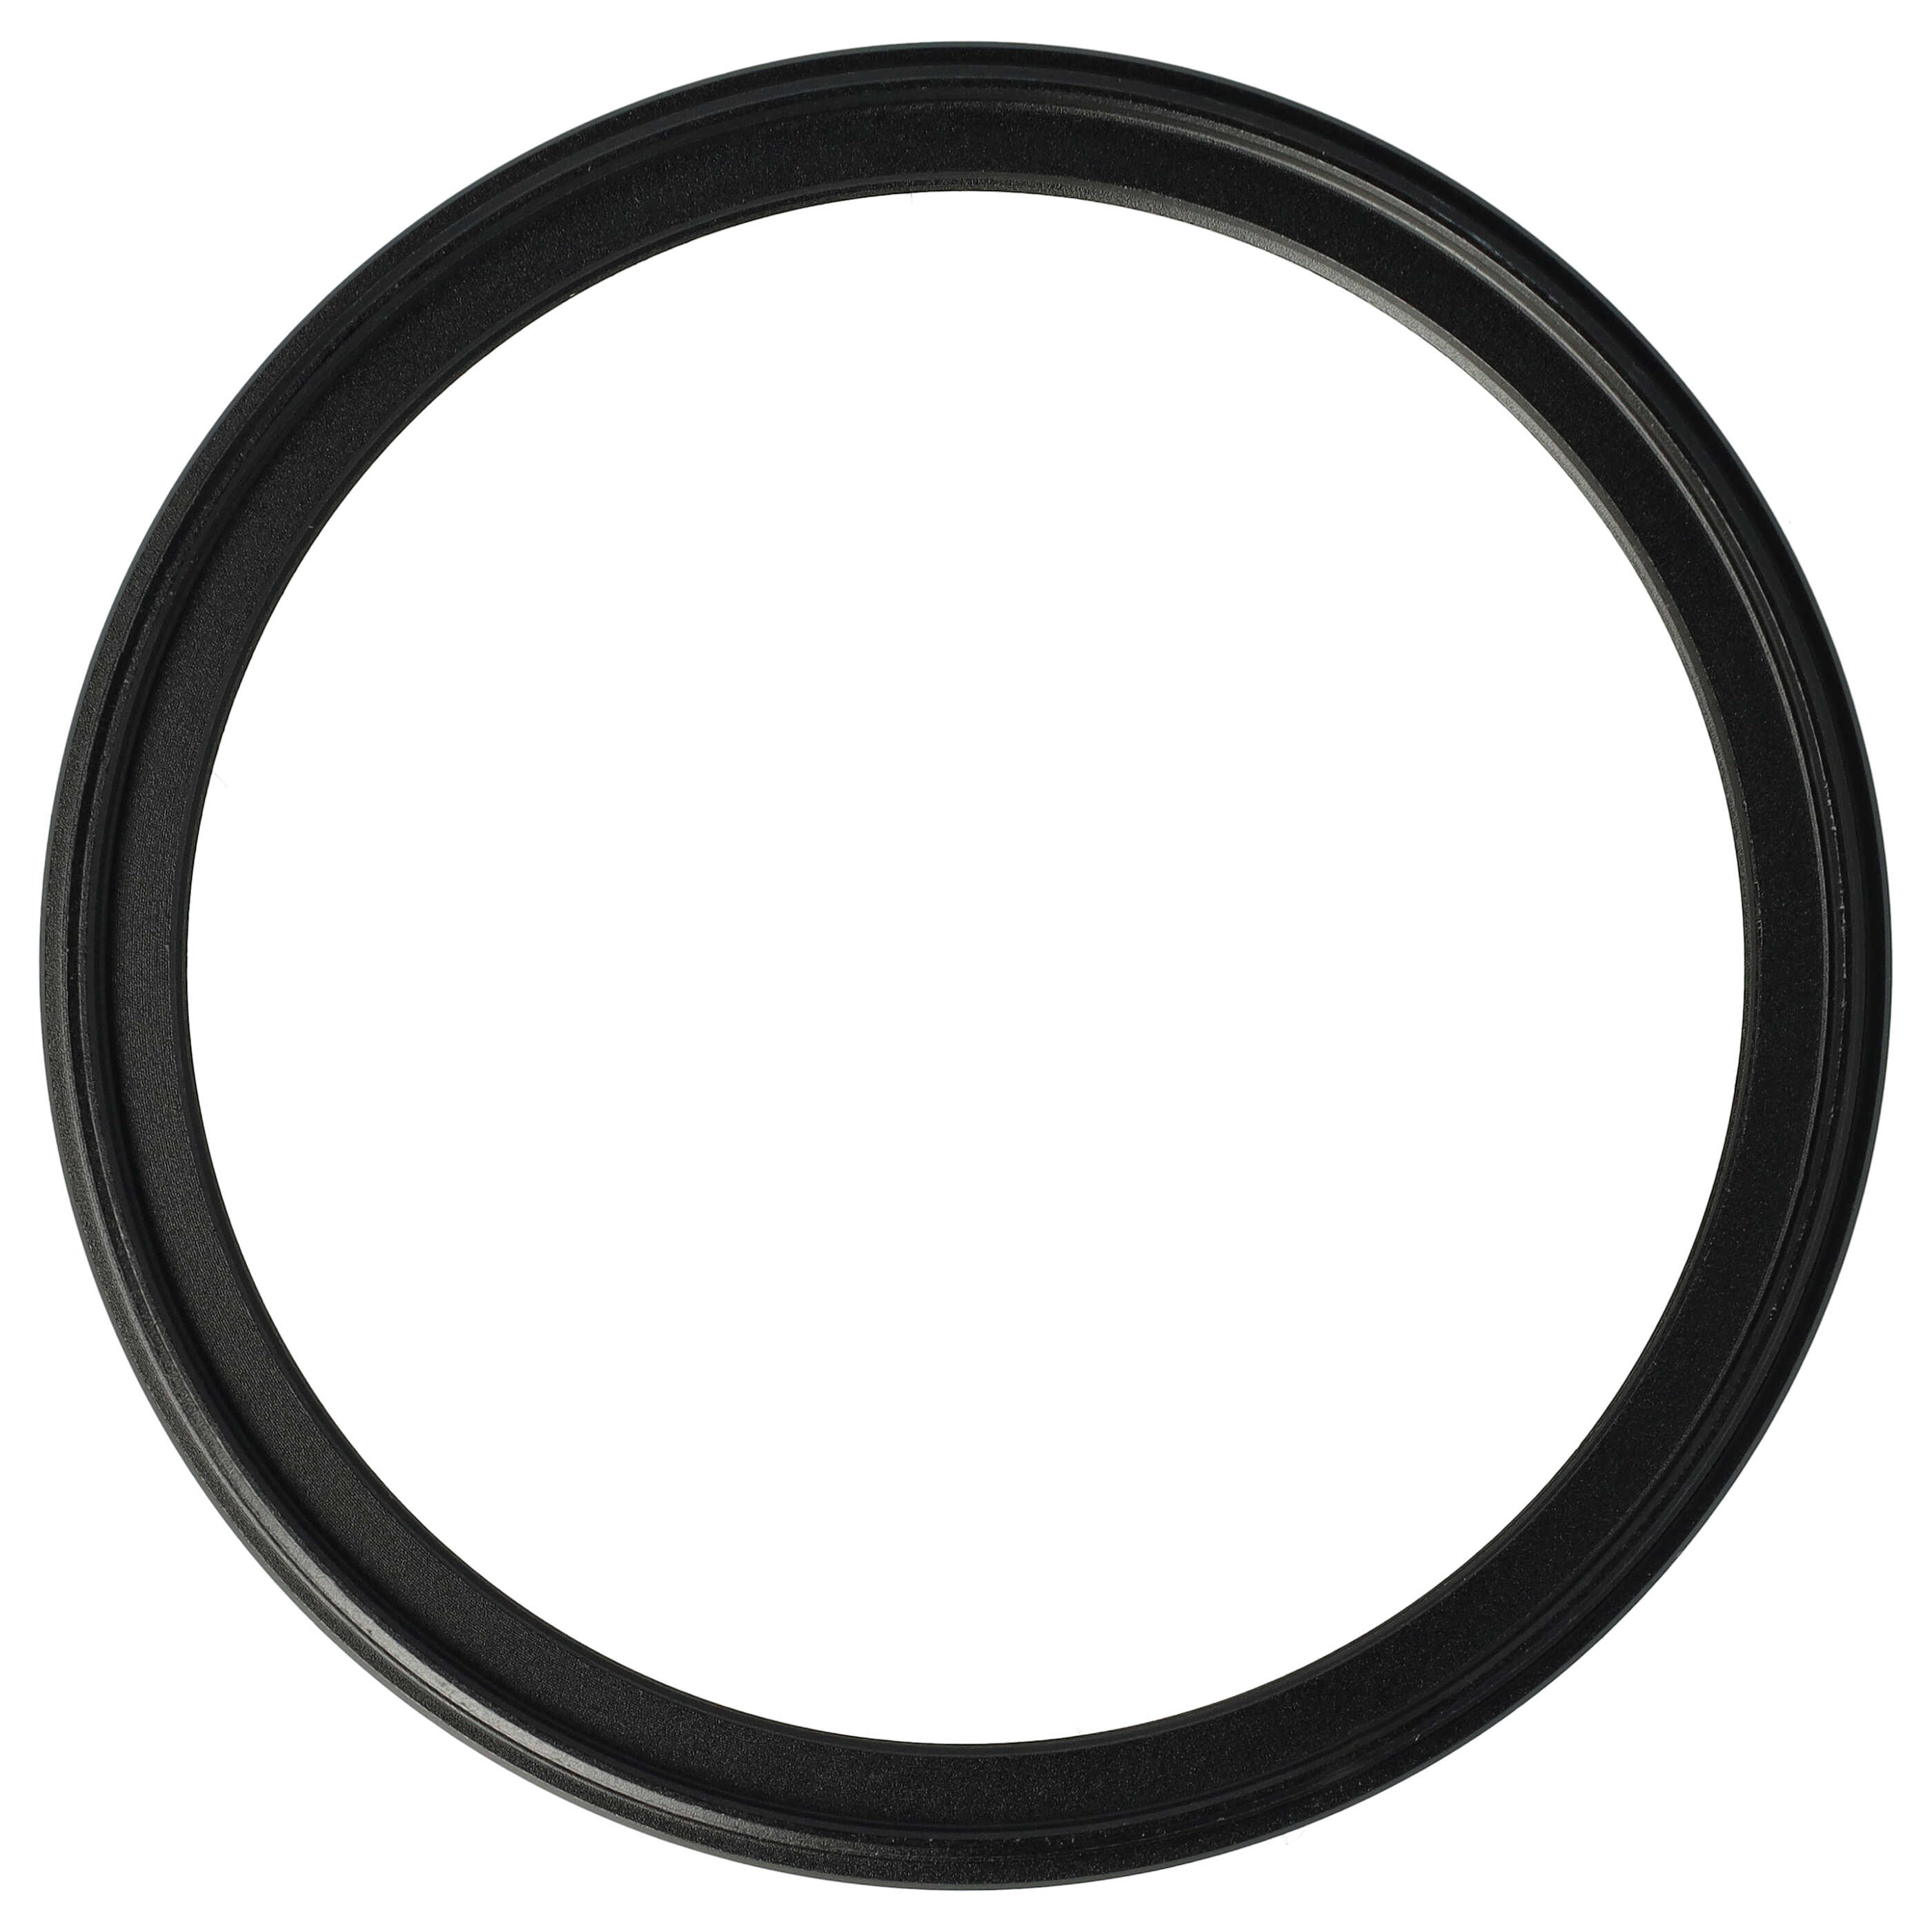 Redukcja filtrowa adapter Step-Down 82 mm - 72 mm pasująca do obiektywu - metal, czarny